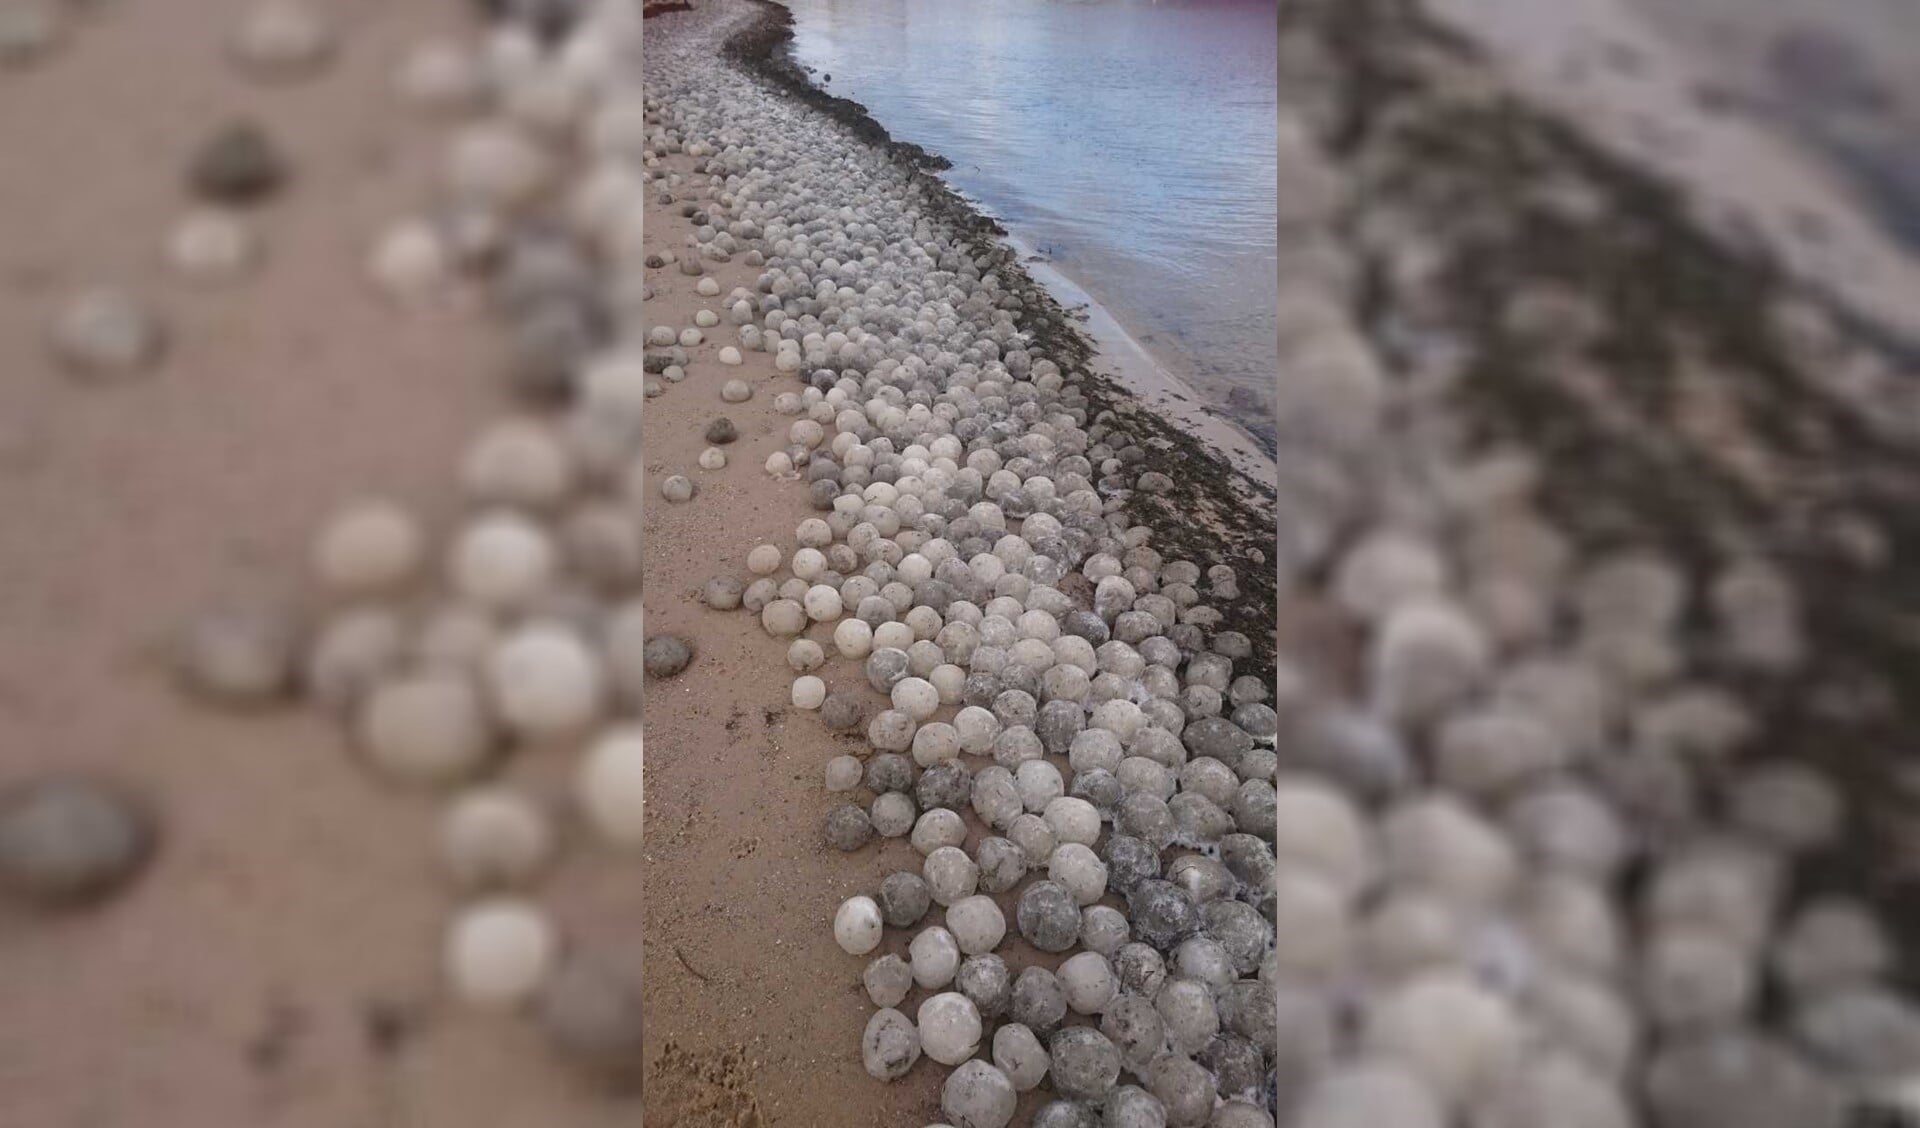 Hoe ontstaan deze mysterieuze ijsballen?